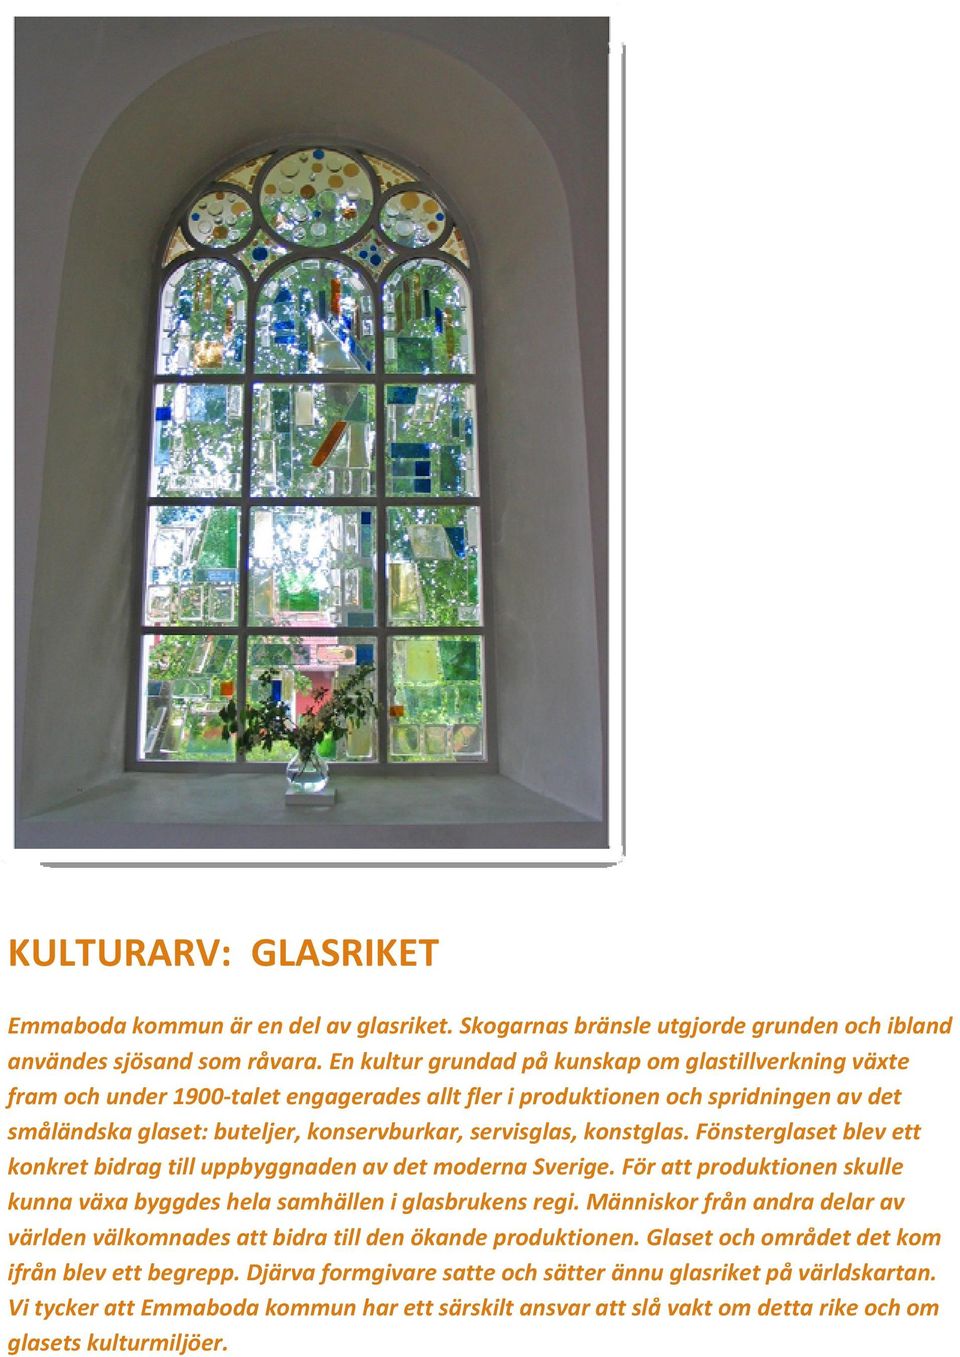 konstglas. Fönsterglaset blev ett konkret bidrag till uppbyggnaden av det moderna Sverige. För att produktionen skulle kunna växa byggdes hela samhällen i glasbrukens regi.